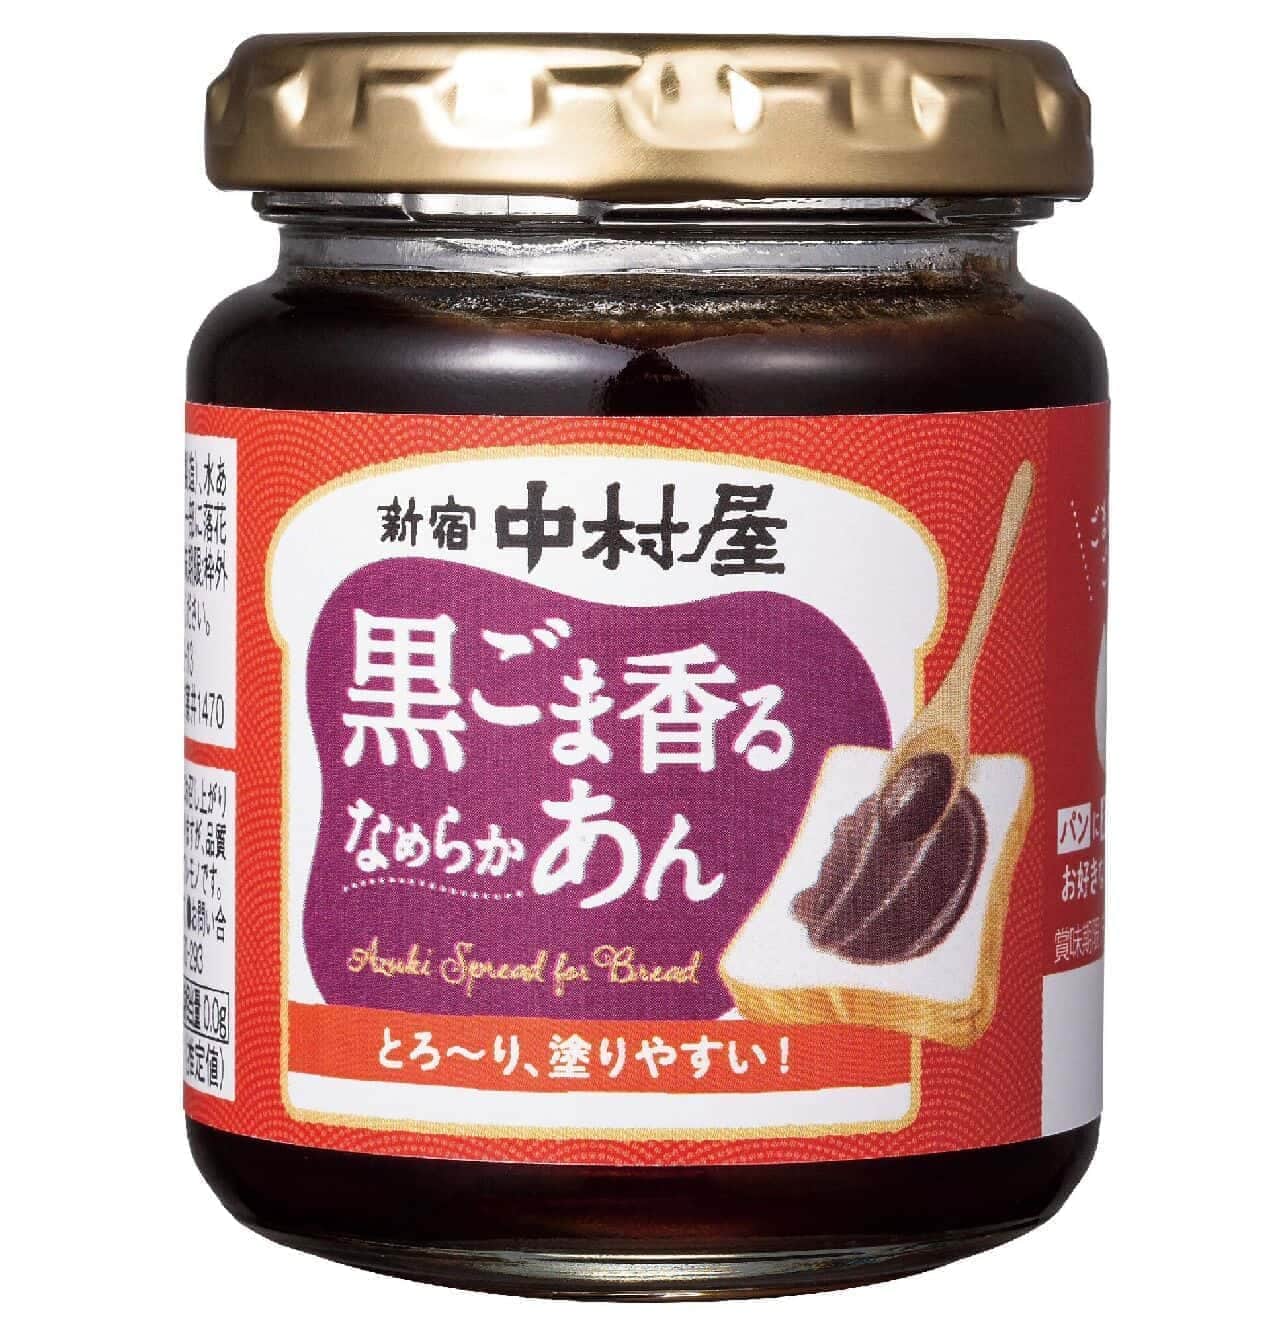 Nakamuraya "Black sesame scented smooth bean paste"